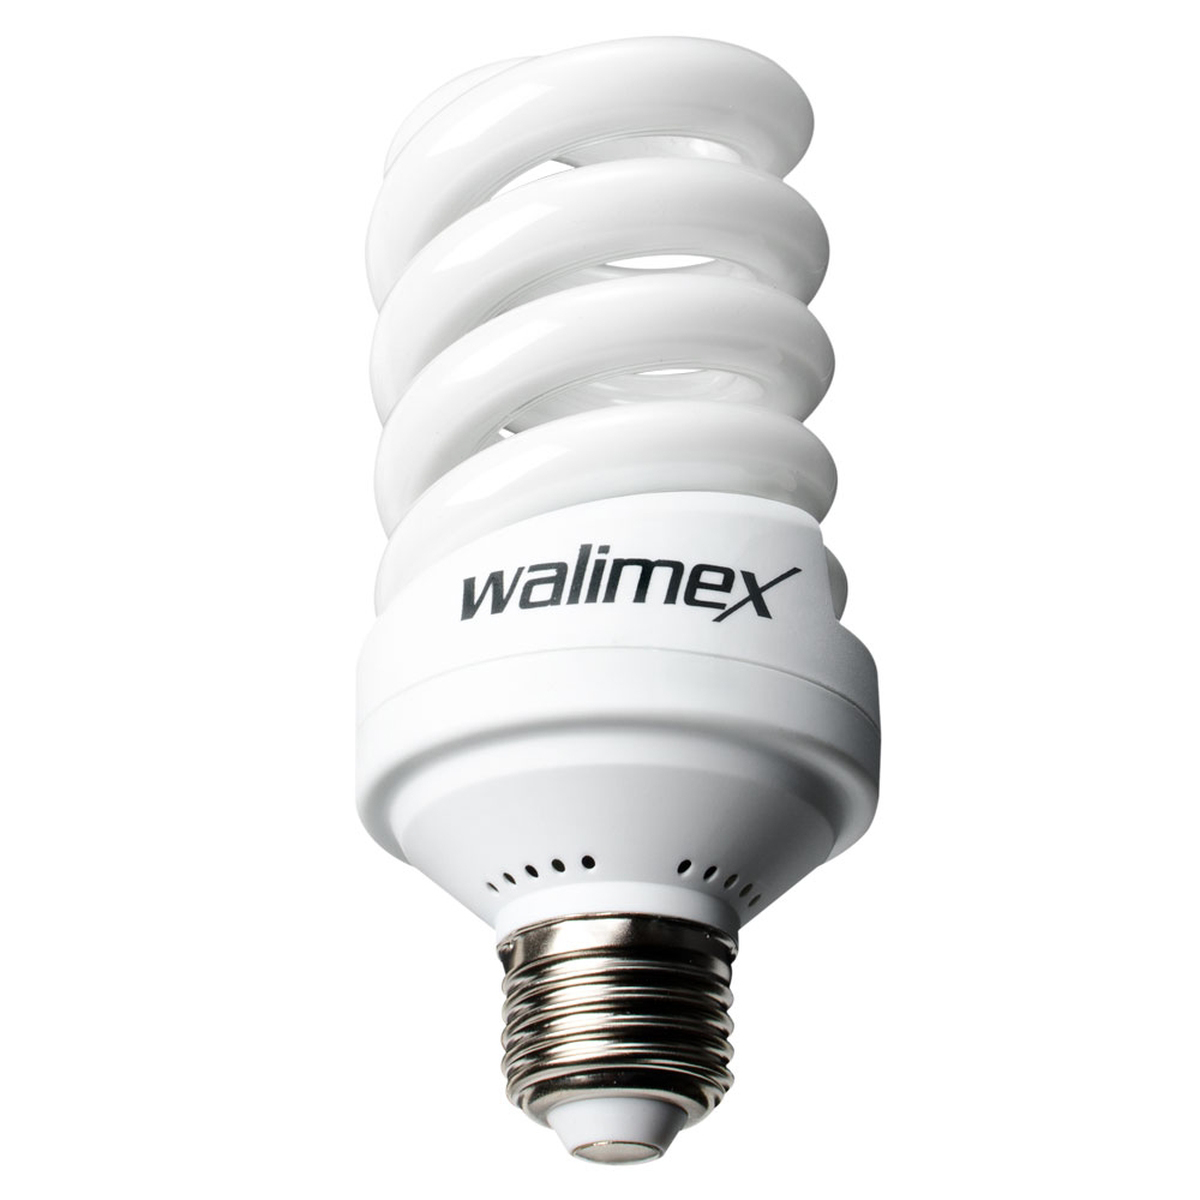 Walimex Spiral-Tageslichtlampe 30 W entspricht 150 W